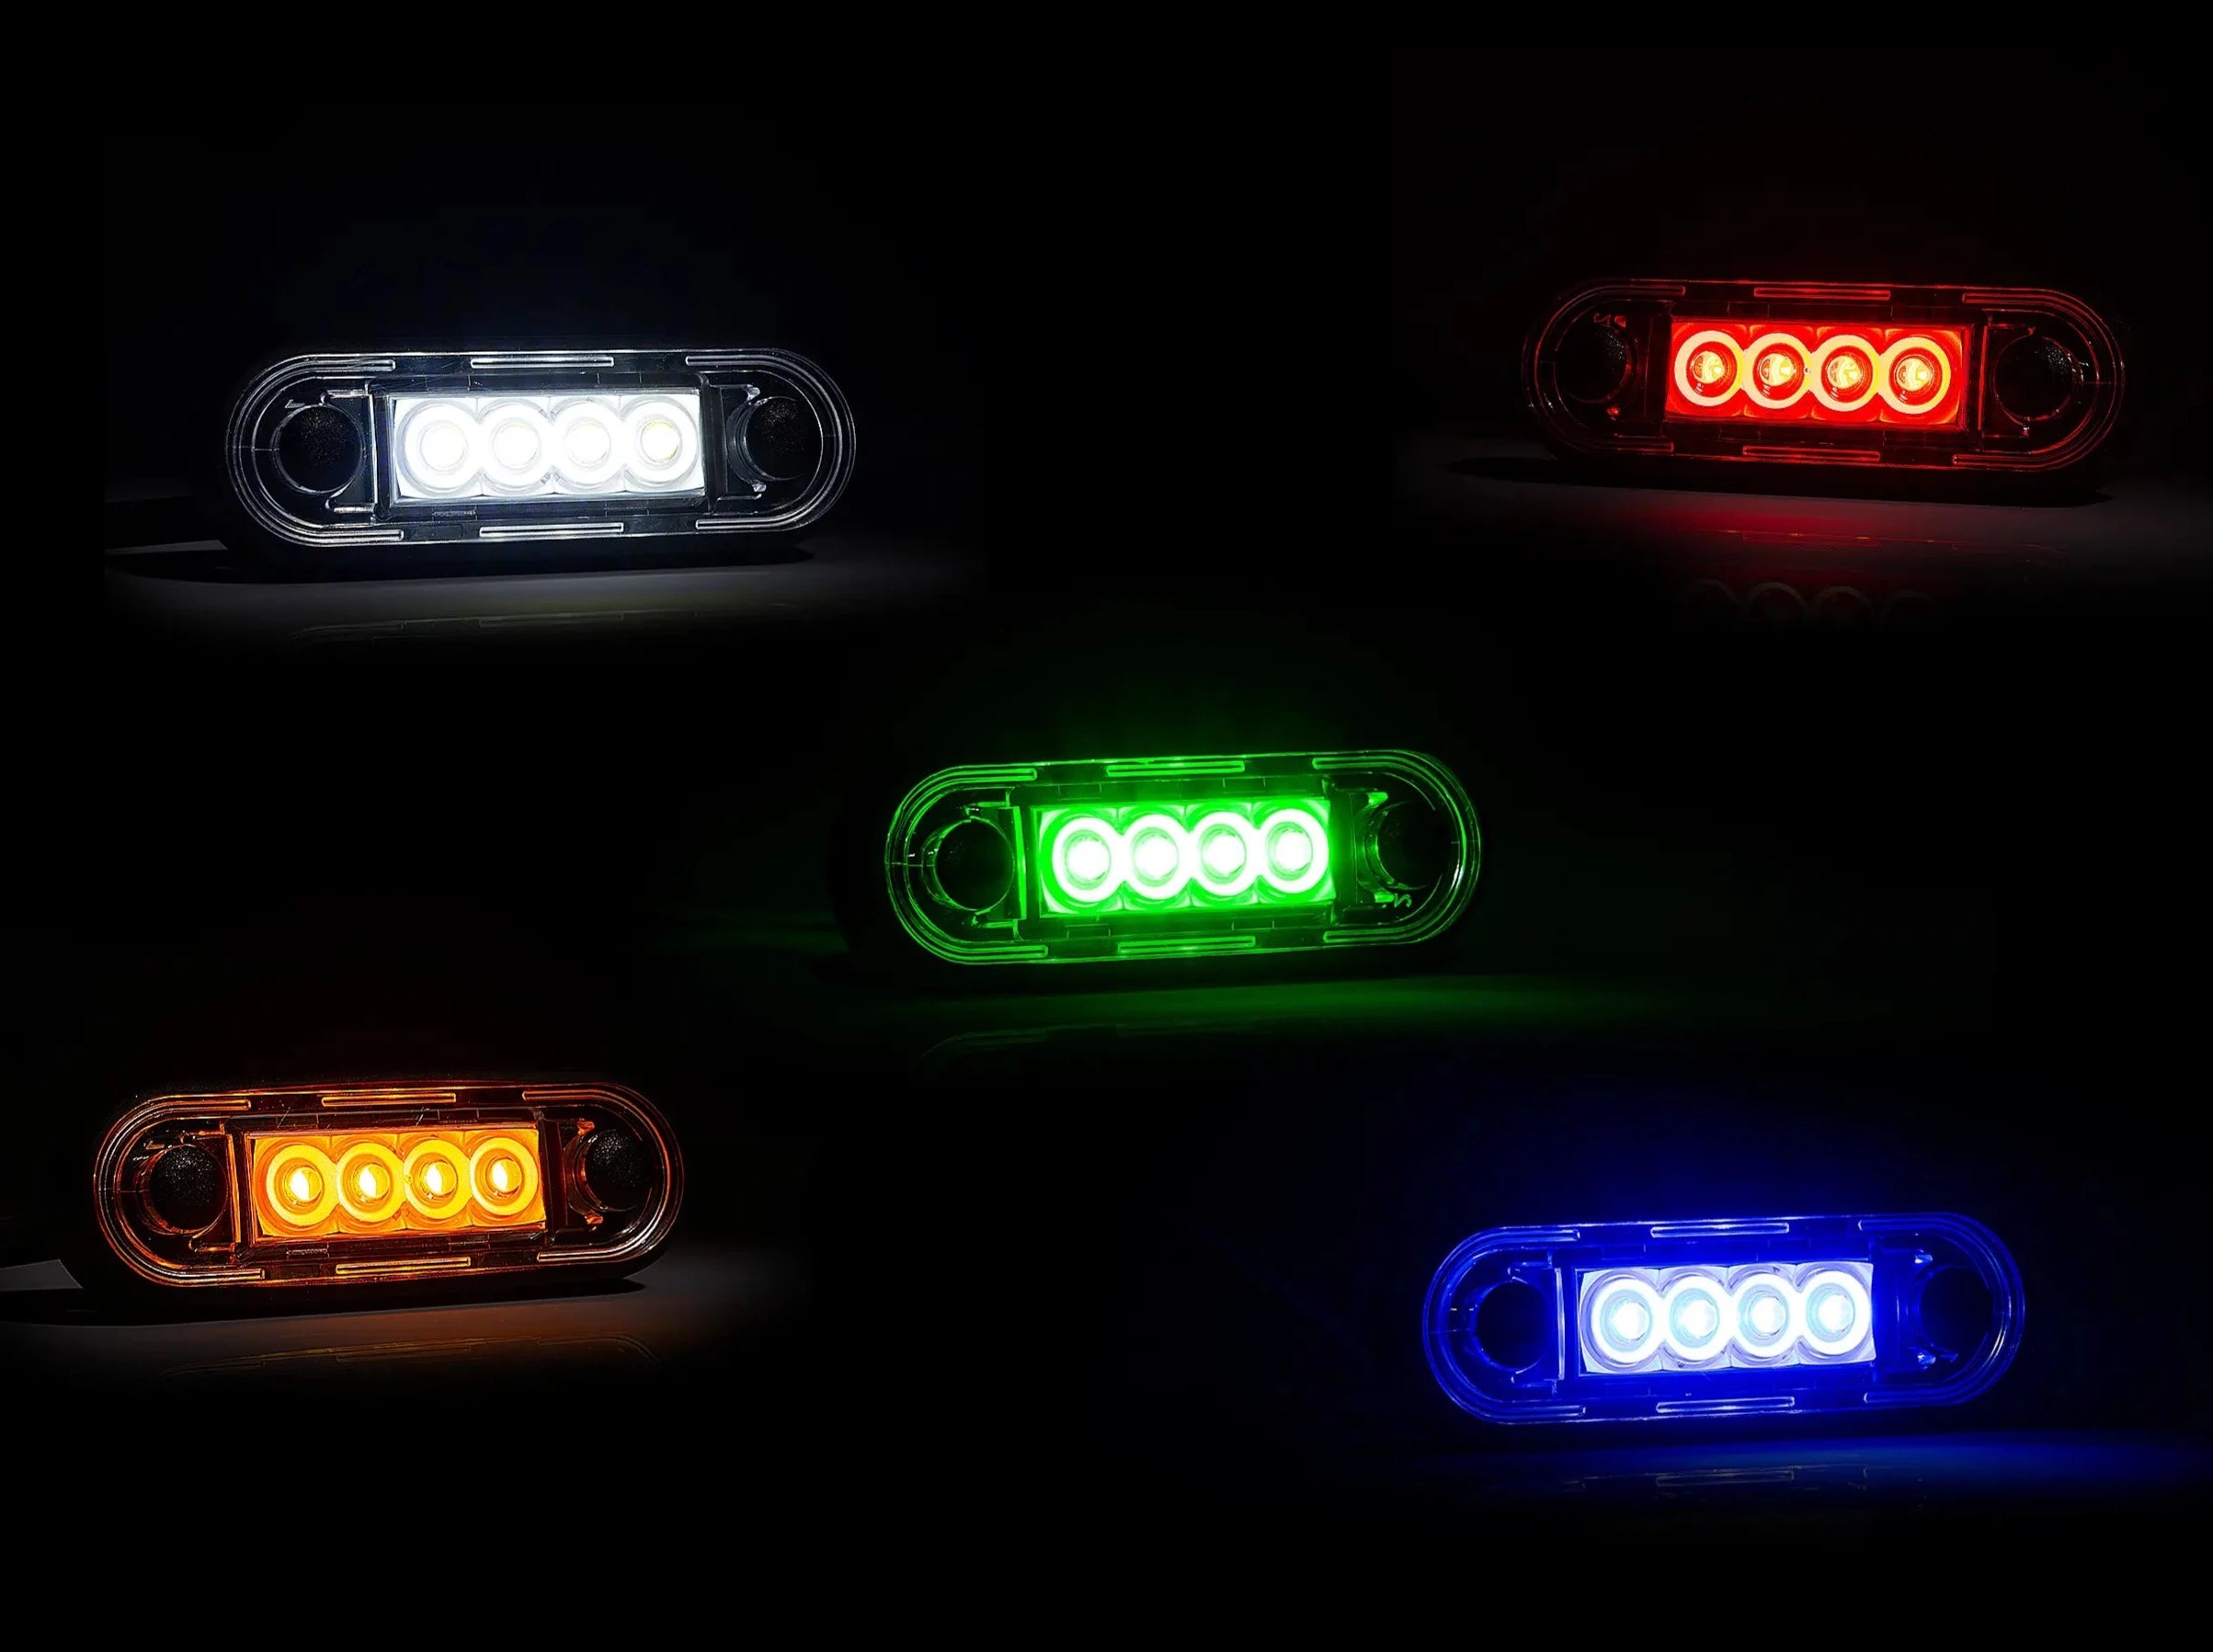 Premium LED-markeringslicht voor Truck Bars & Bull Bars - spo-cs-disabled - spo-default - spo-disabled - spo-notify-me-disa